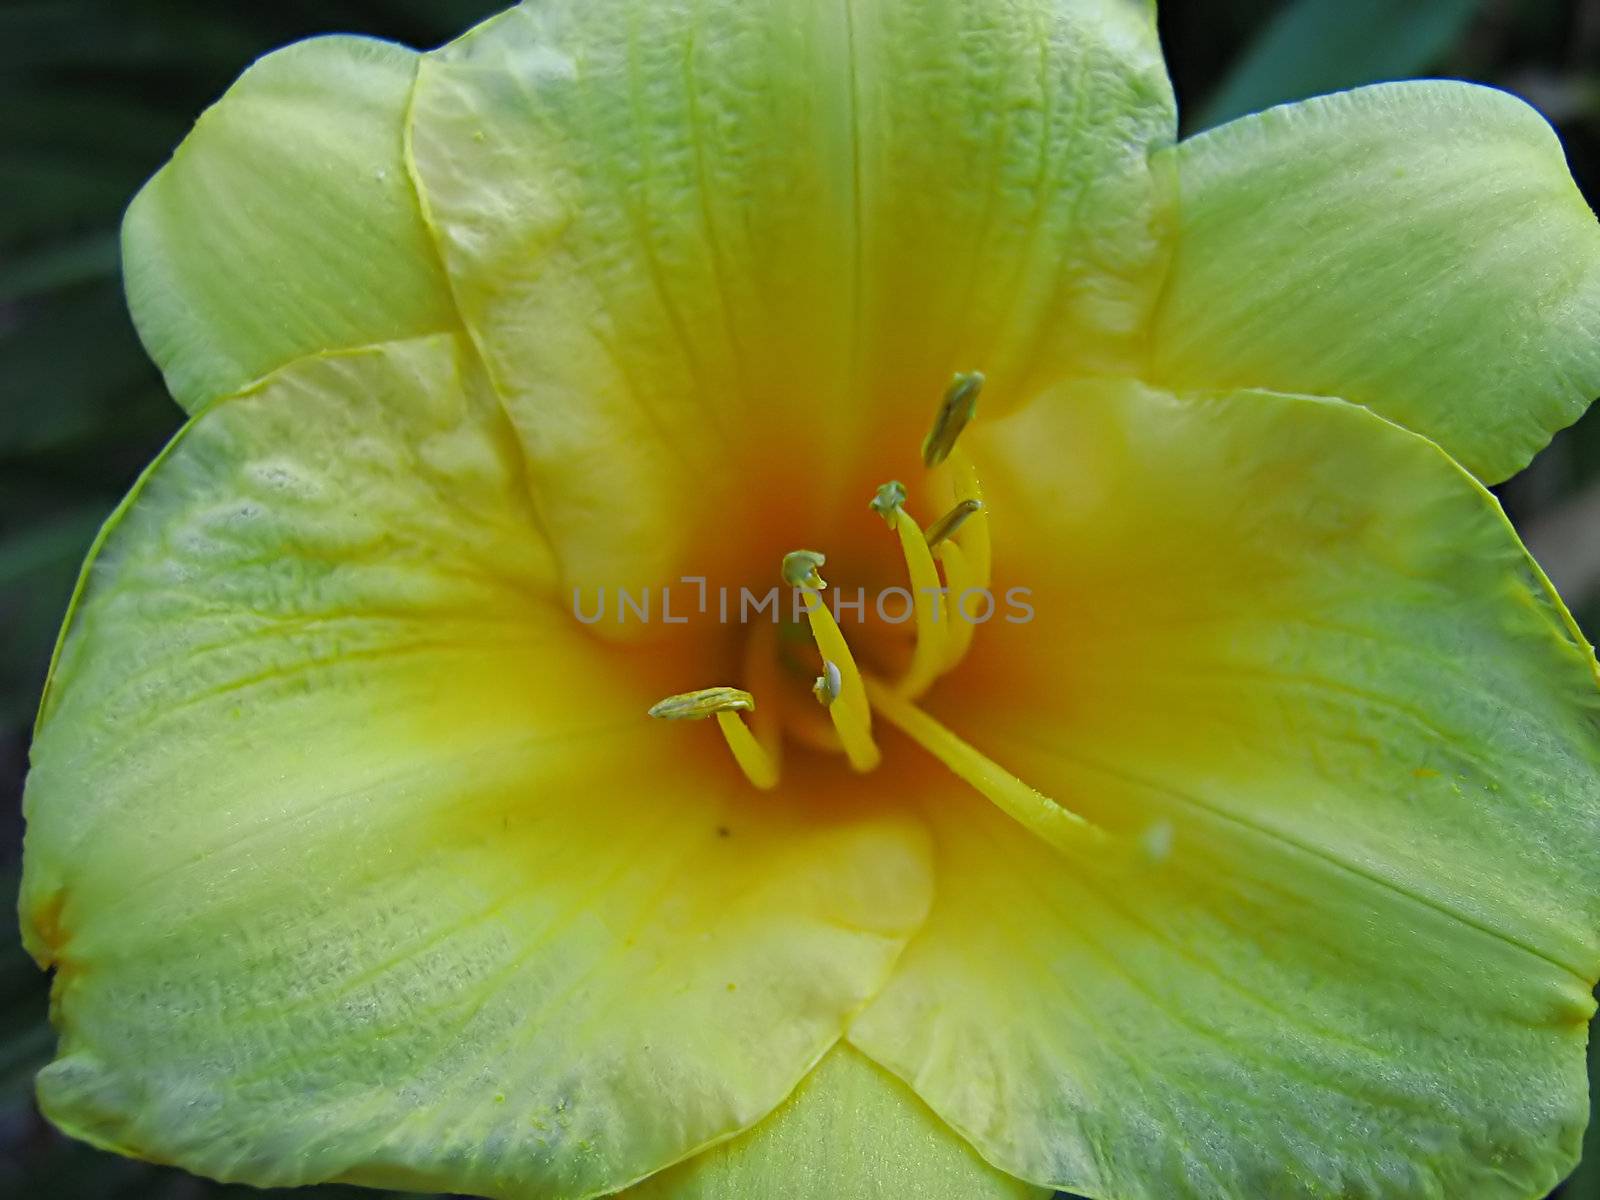 Yellow Flower by llyr8